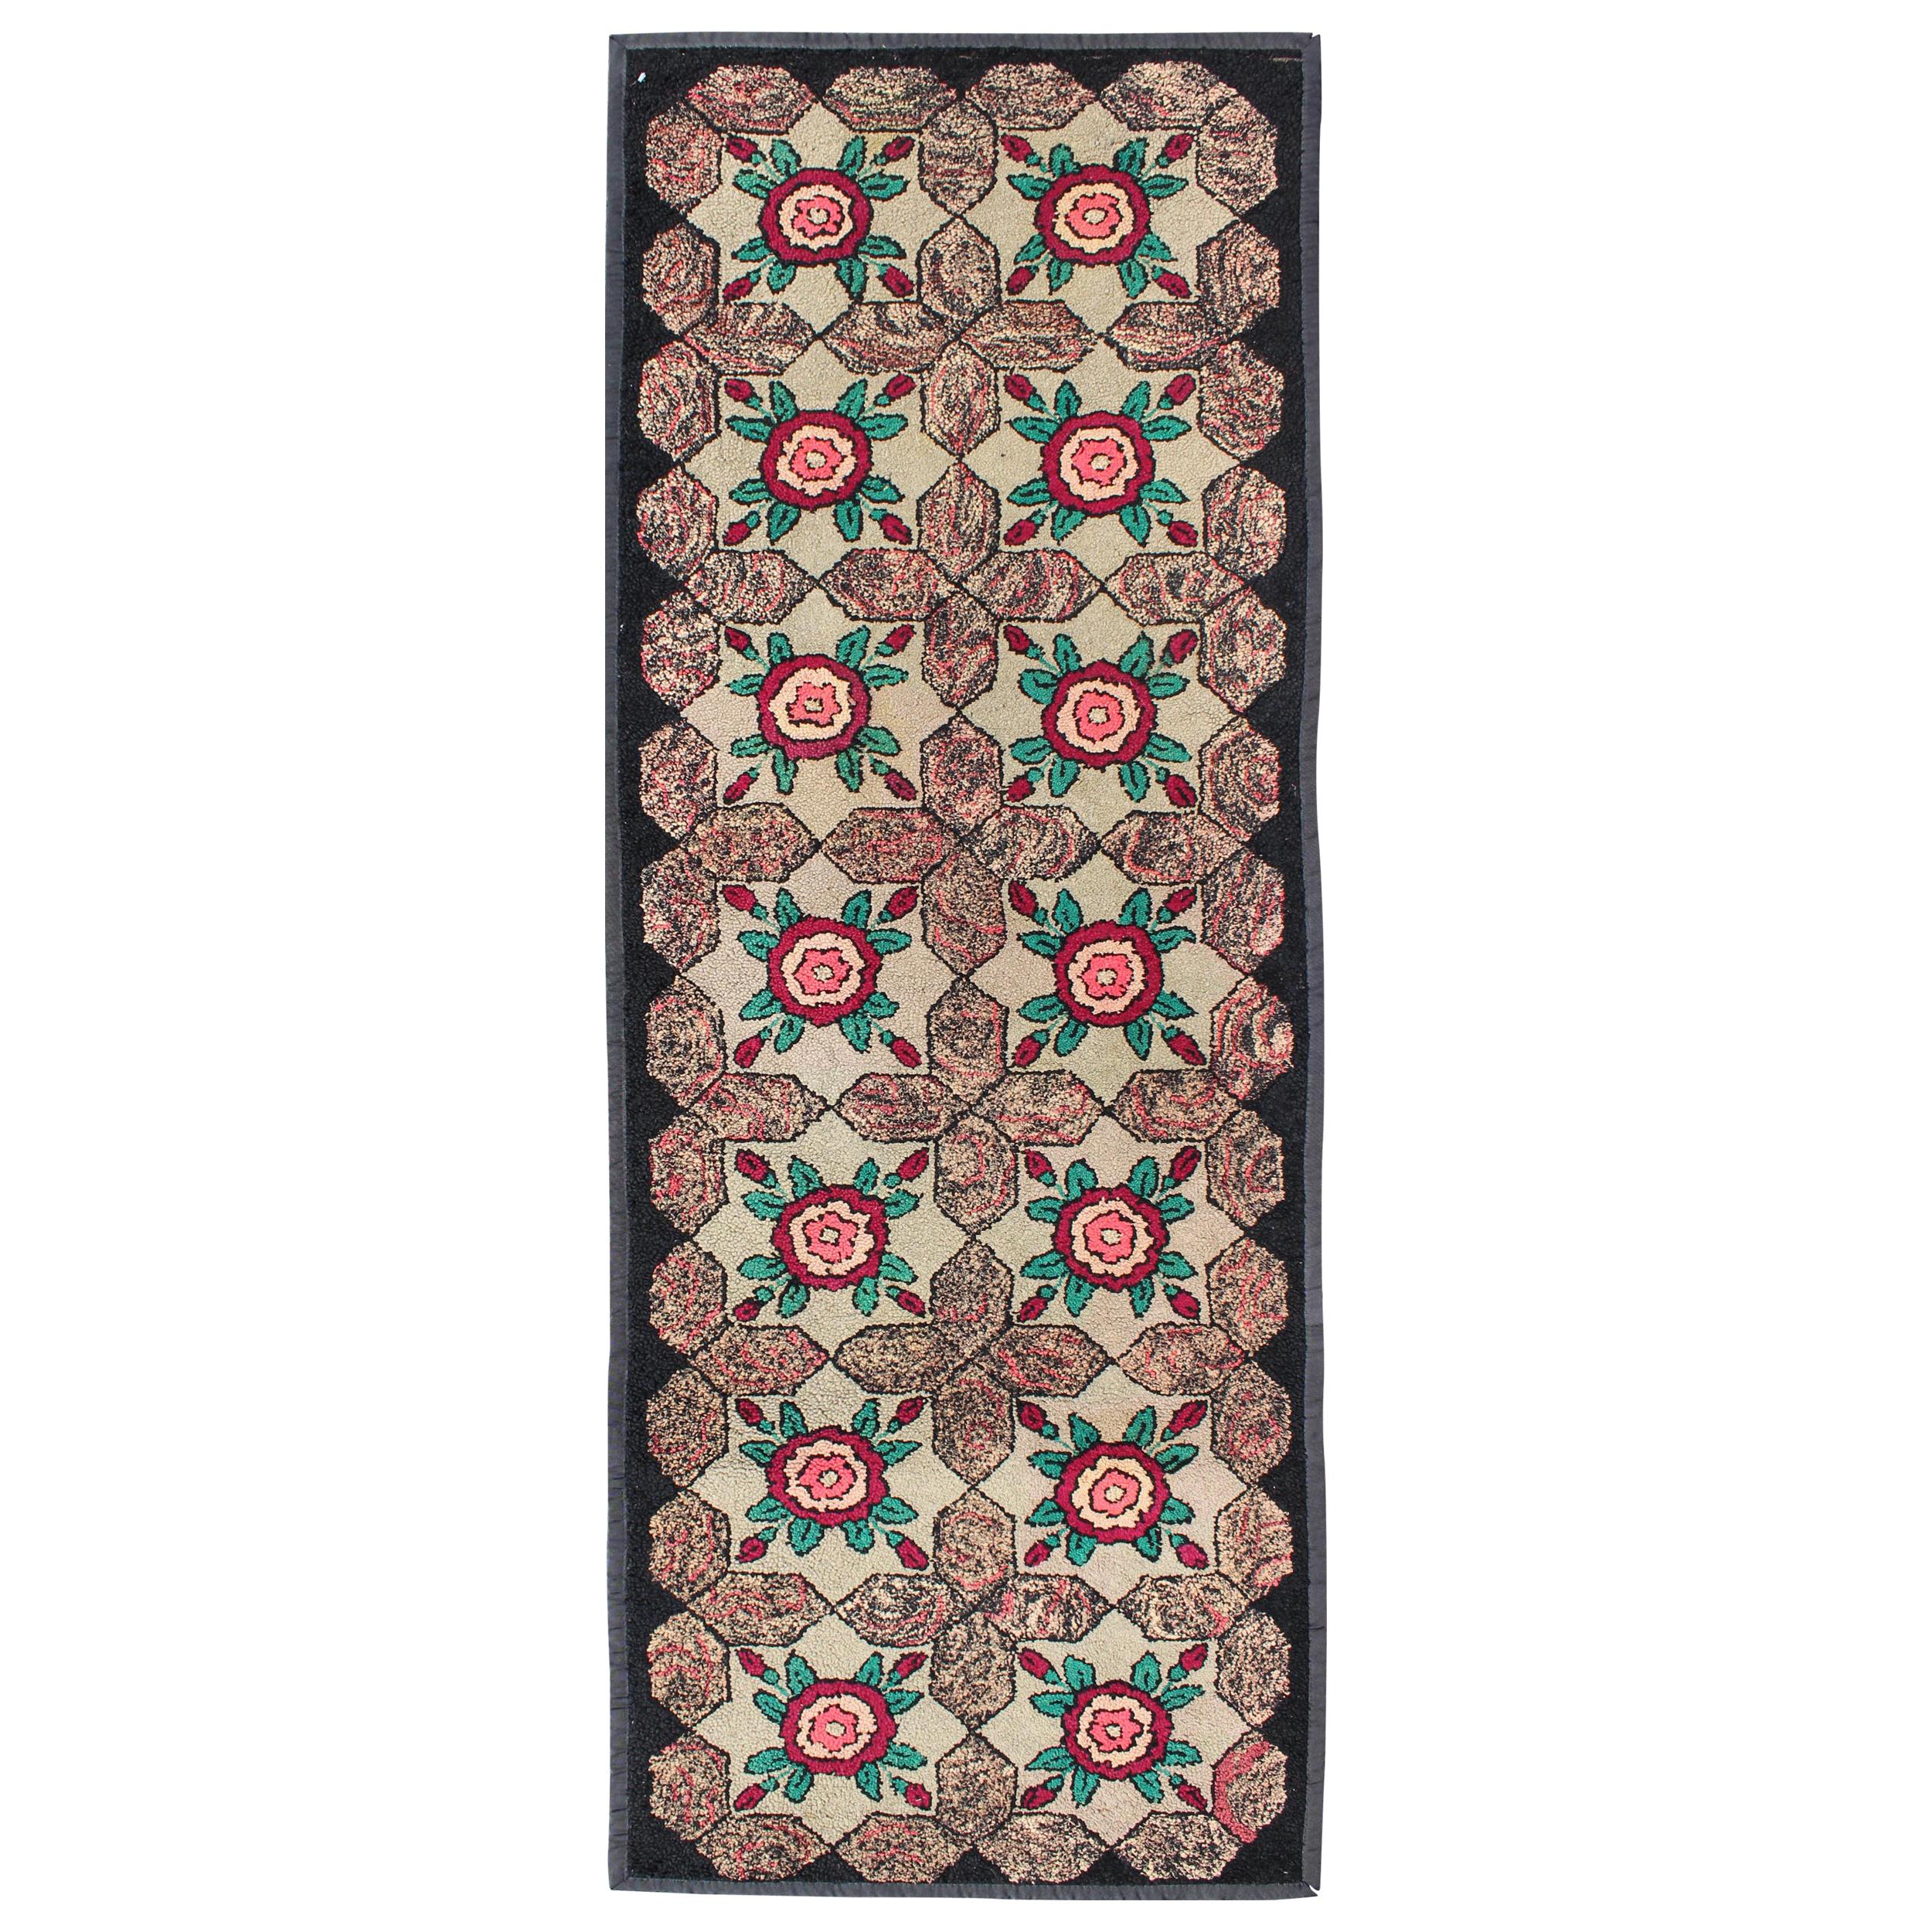 Tapis crocheté américain à motif de feuilles florales répétitives en brun, vert et rouge